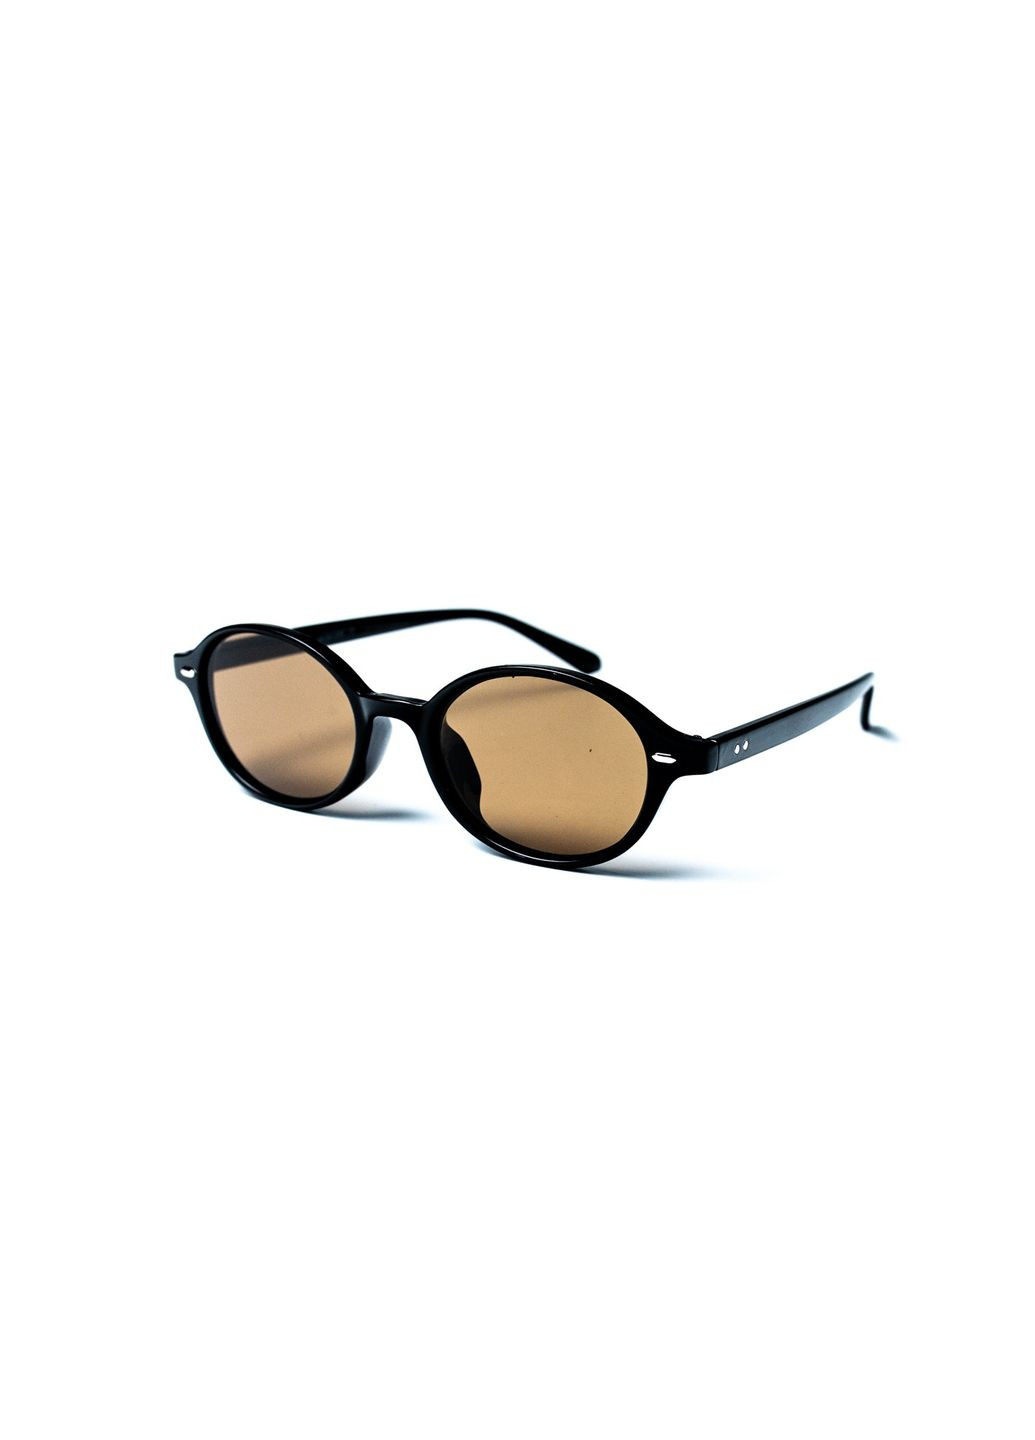 Солнцезащитные очки с поляризацией Эллипсы мужские 428-706 LuckyLOOK 428-706м (290840559)